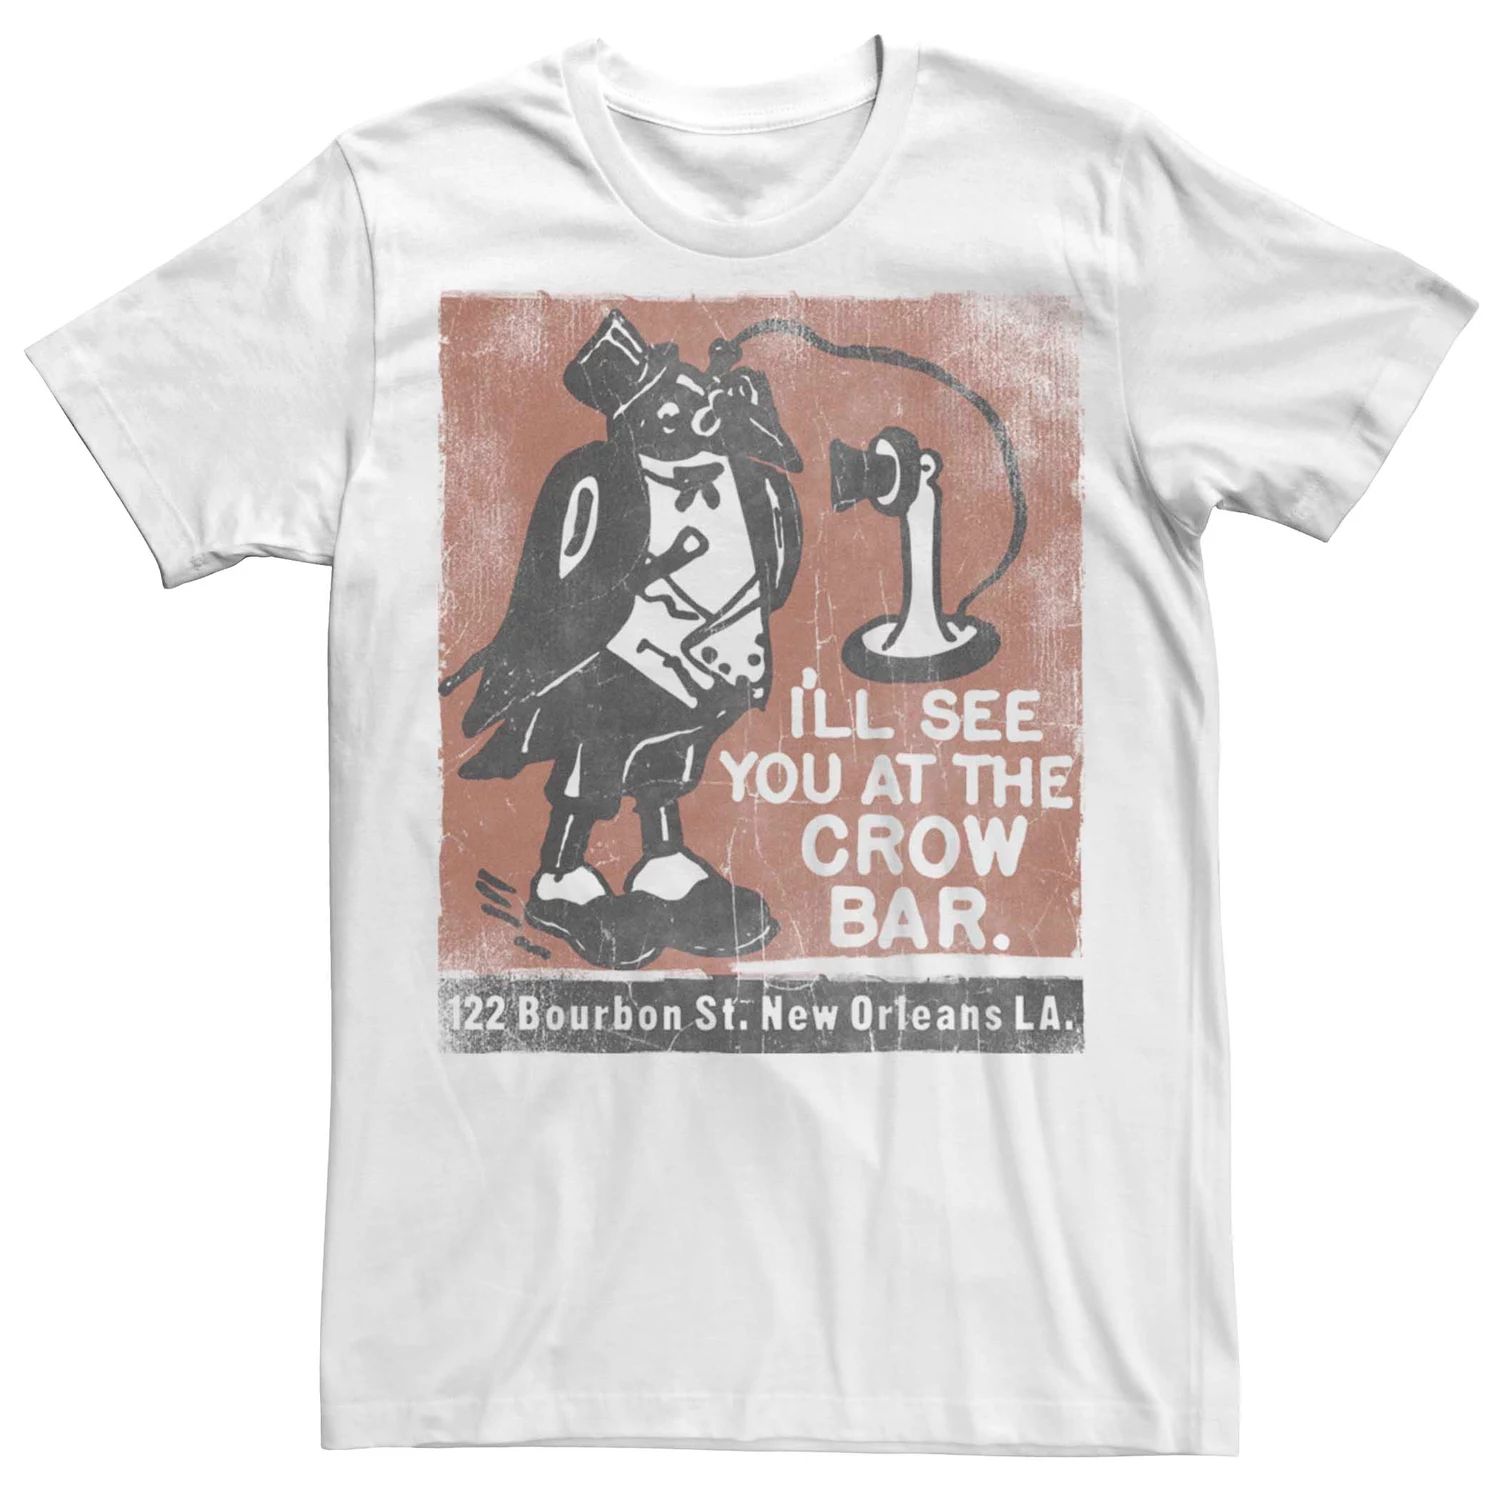 Мужская винтажная футболка с плакатом Crow Bar Licensed Character цена и фото